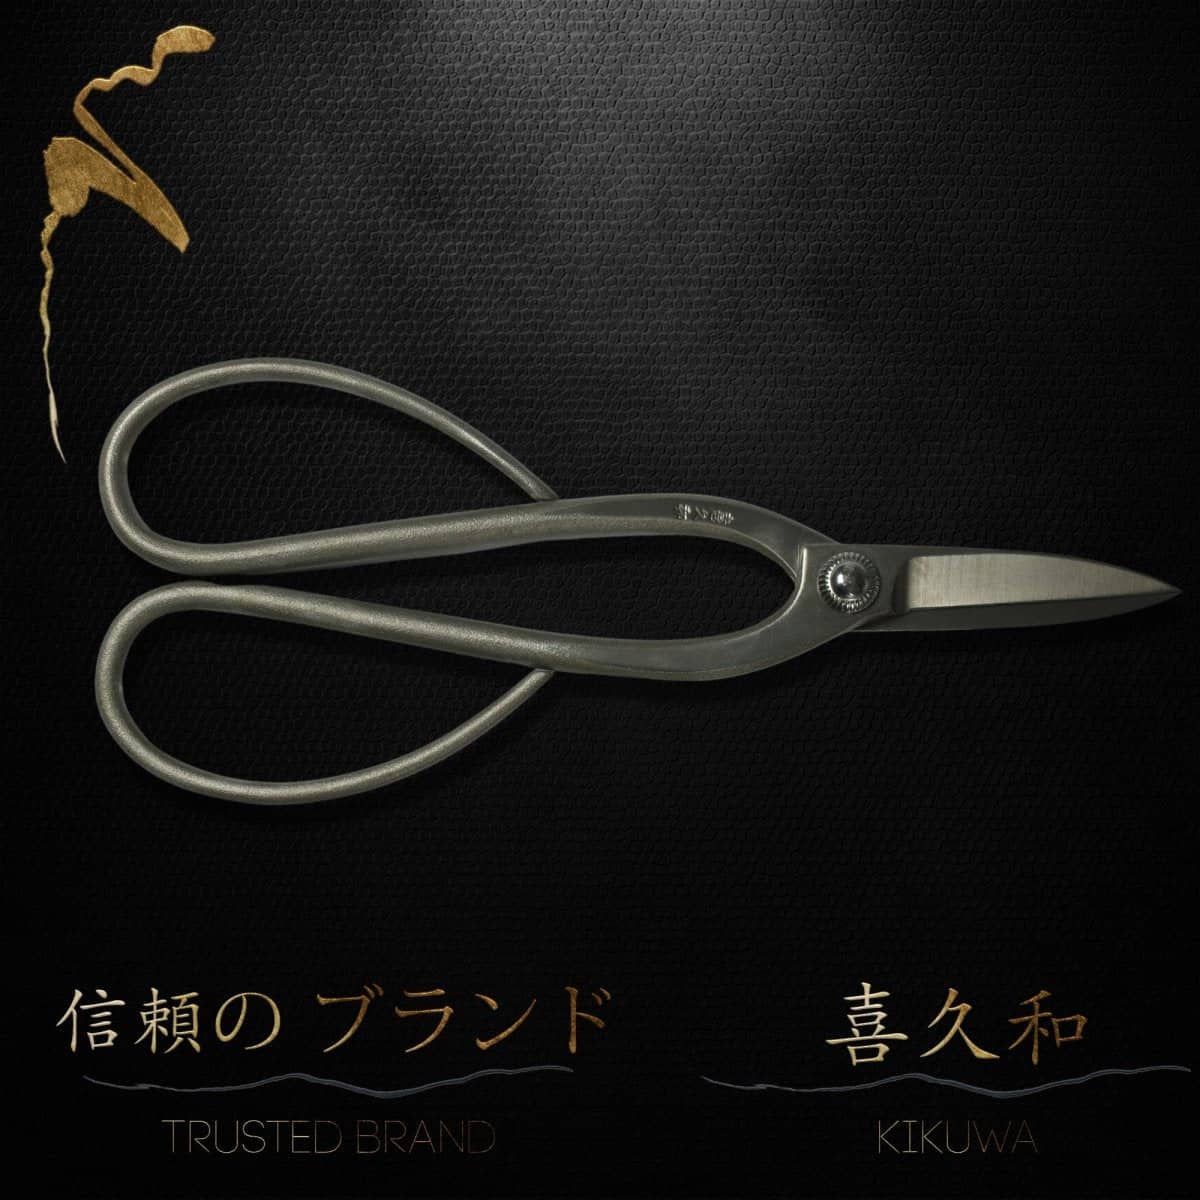 Kikuwa 200mm Fluorine Nickel Plated Bonsai Scissors